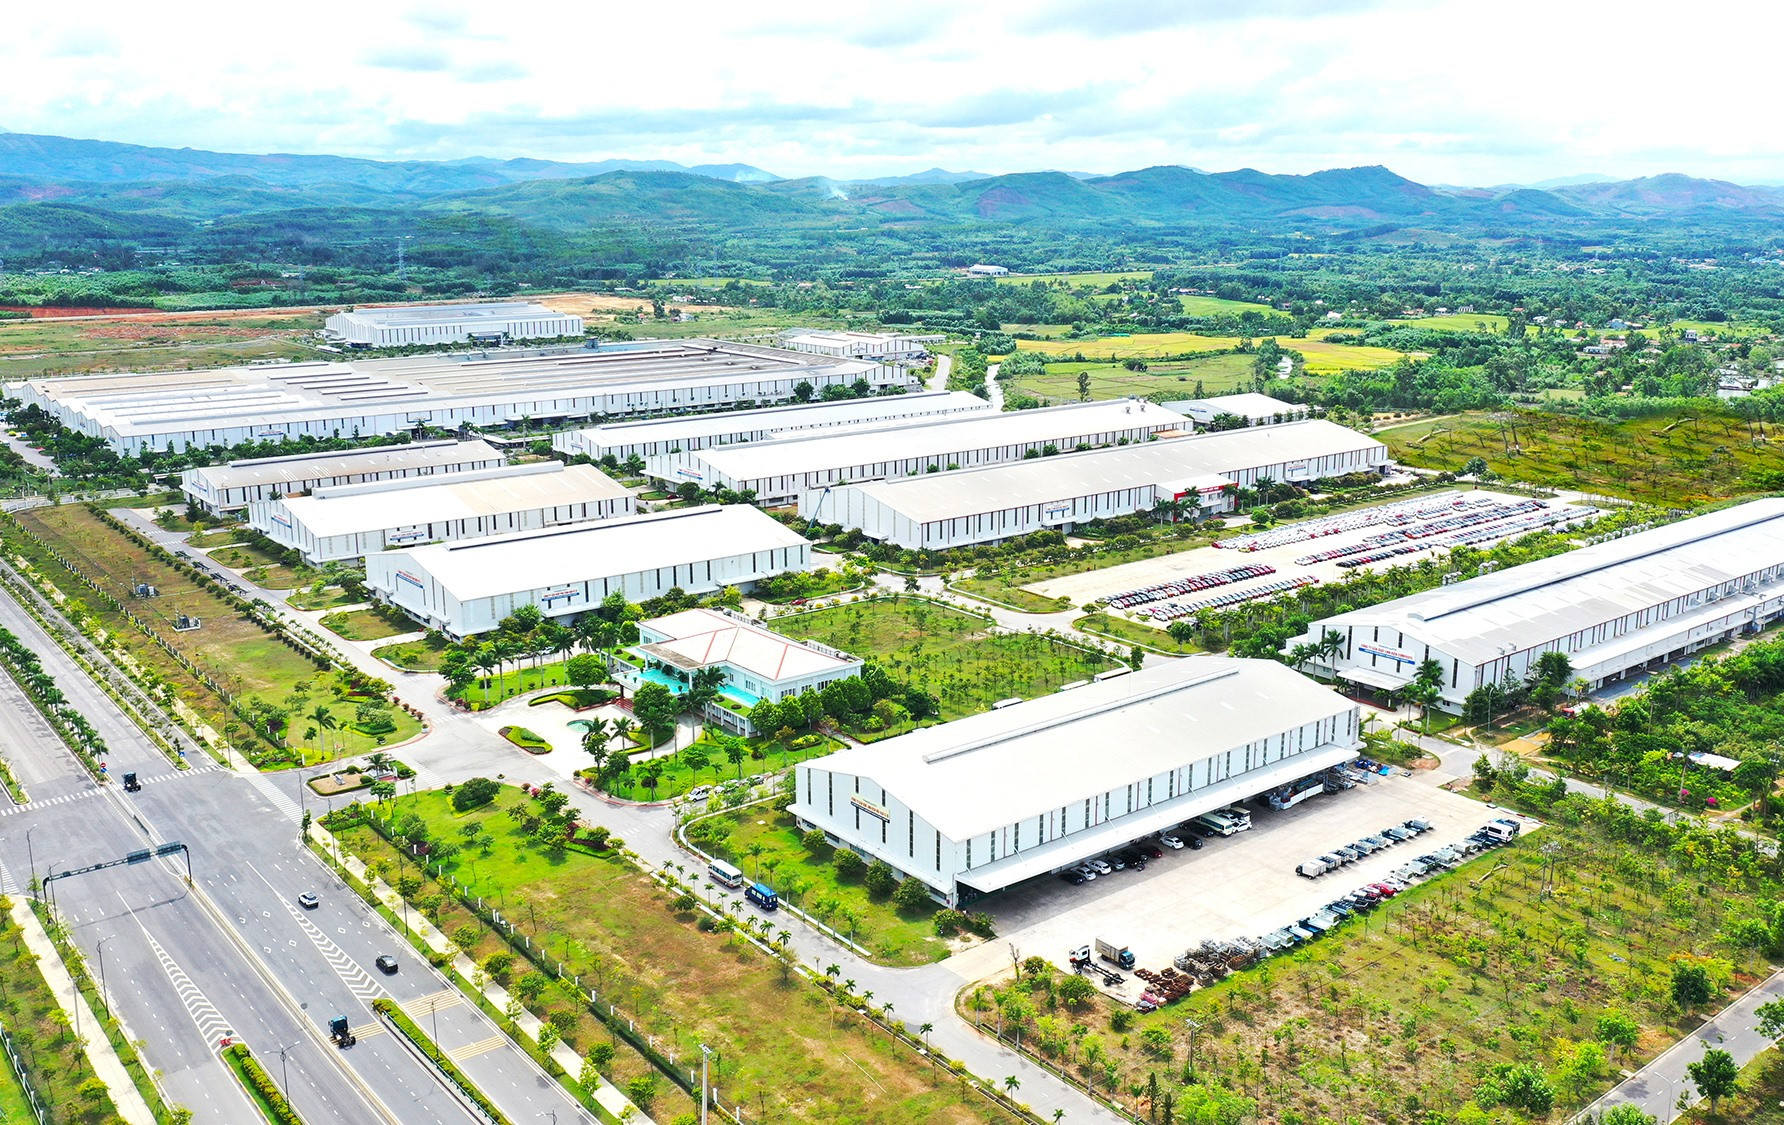 Khu công nghiệp sản xuất linh kiện phụ tùng và cơ khí Thaco.